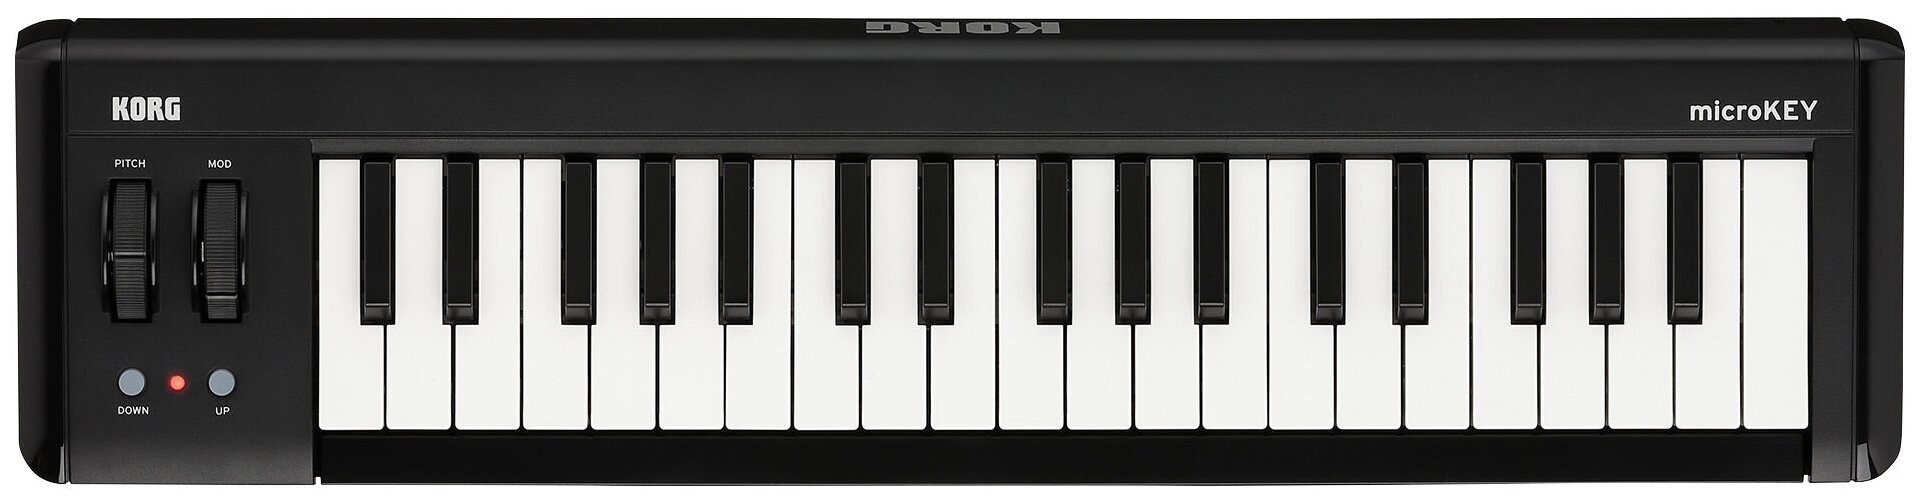 Korg Microkey2-37 MIDI-клавиатура с поддержкой мобильных устройств, 37 клавиш